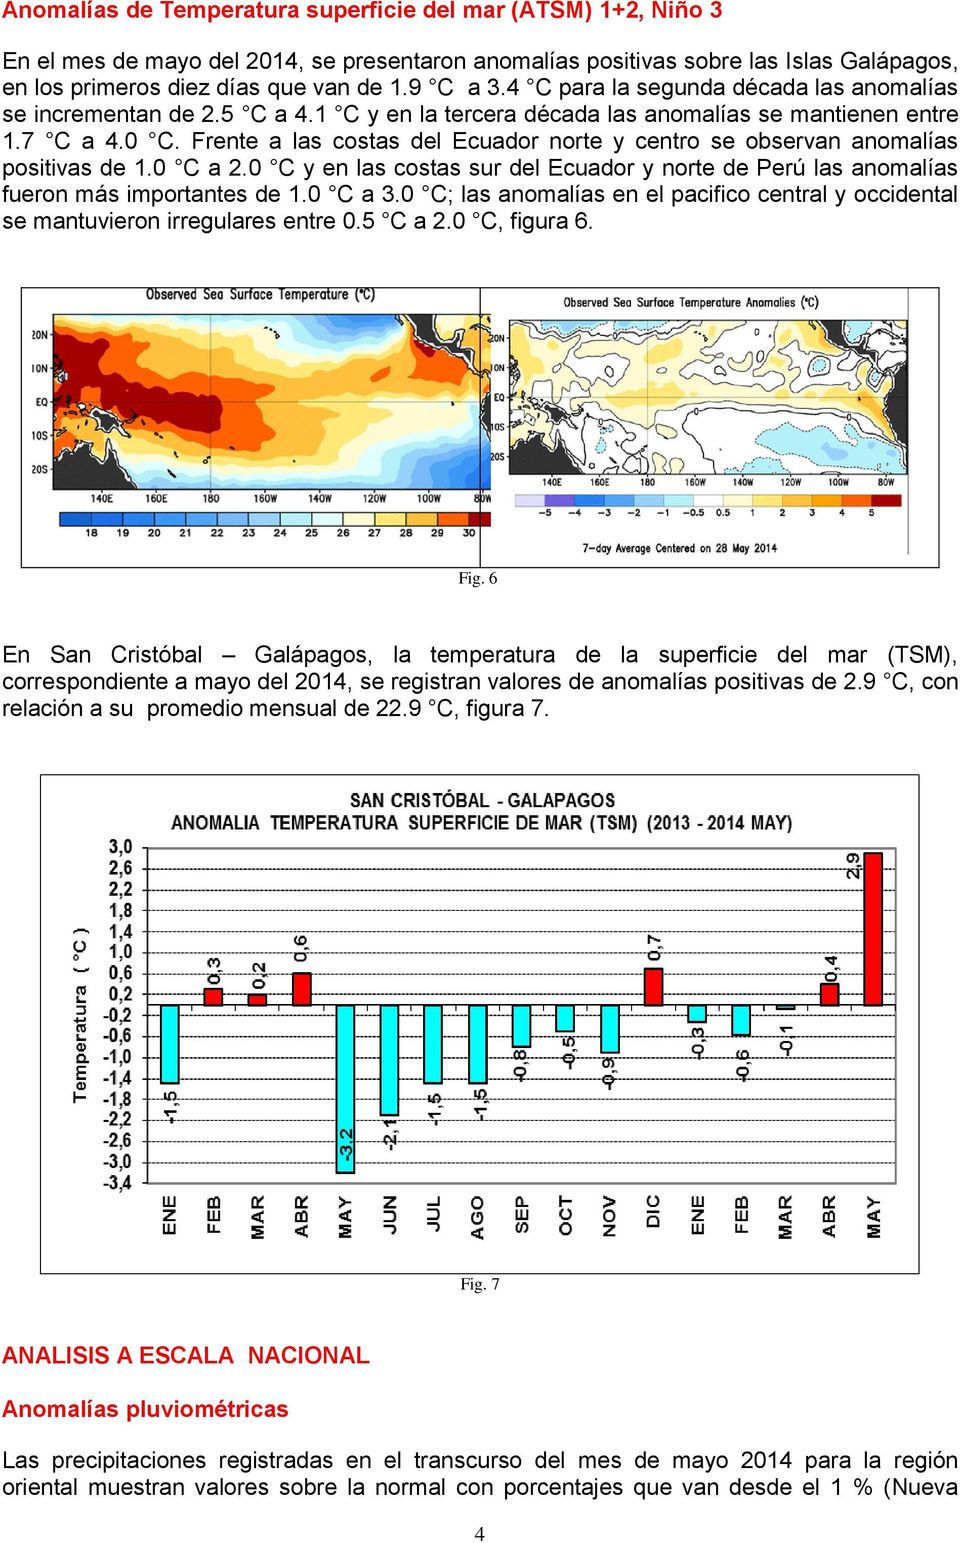 Frente a las costas del Ecuador norte y centro se observan anomalías positivas de 1.0 C a 2.0 C y en las costas sur del Ecuador y norte de Perú las anomalías fueron más importantes de 1.0 C a 3.